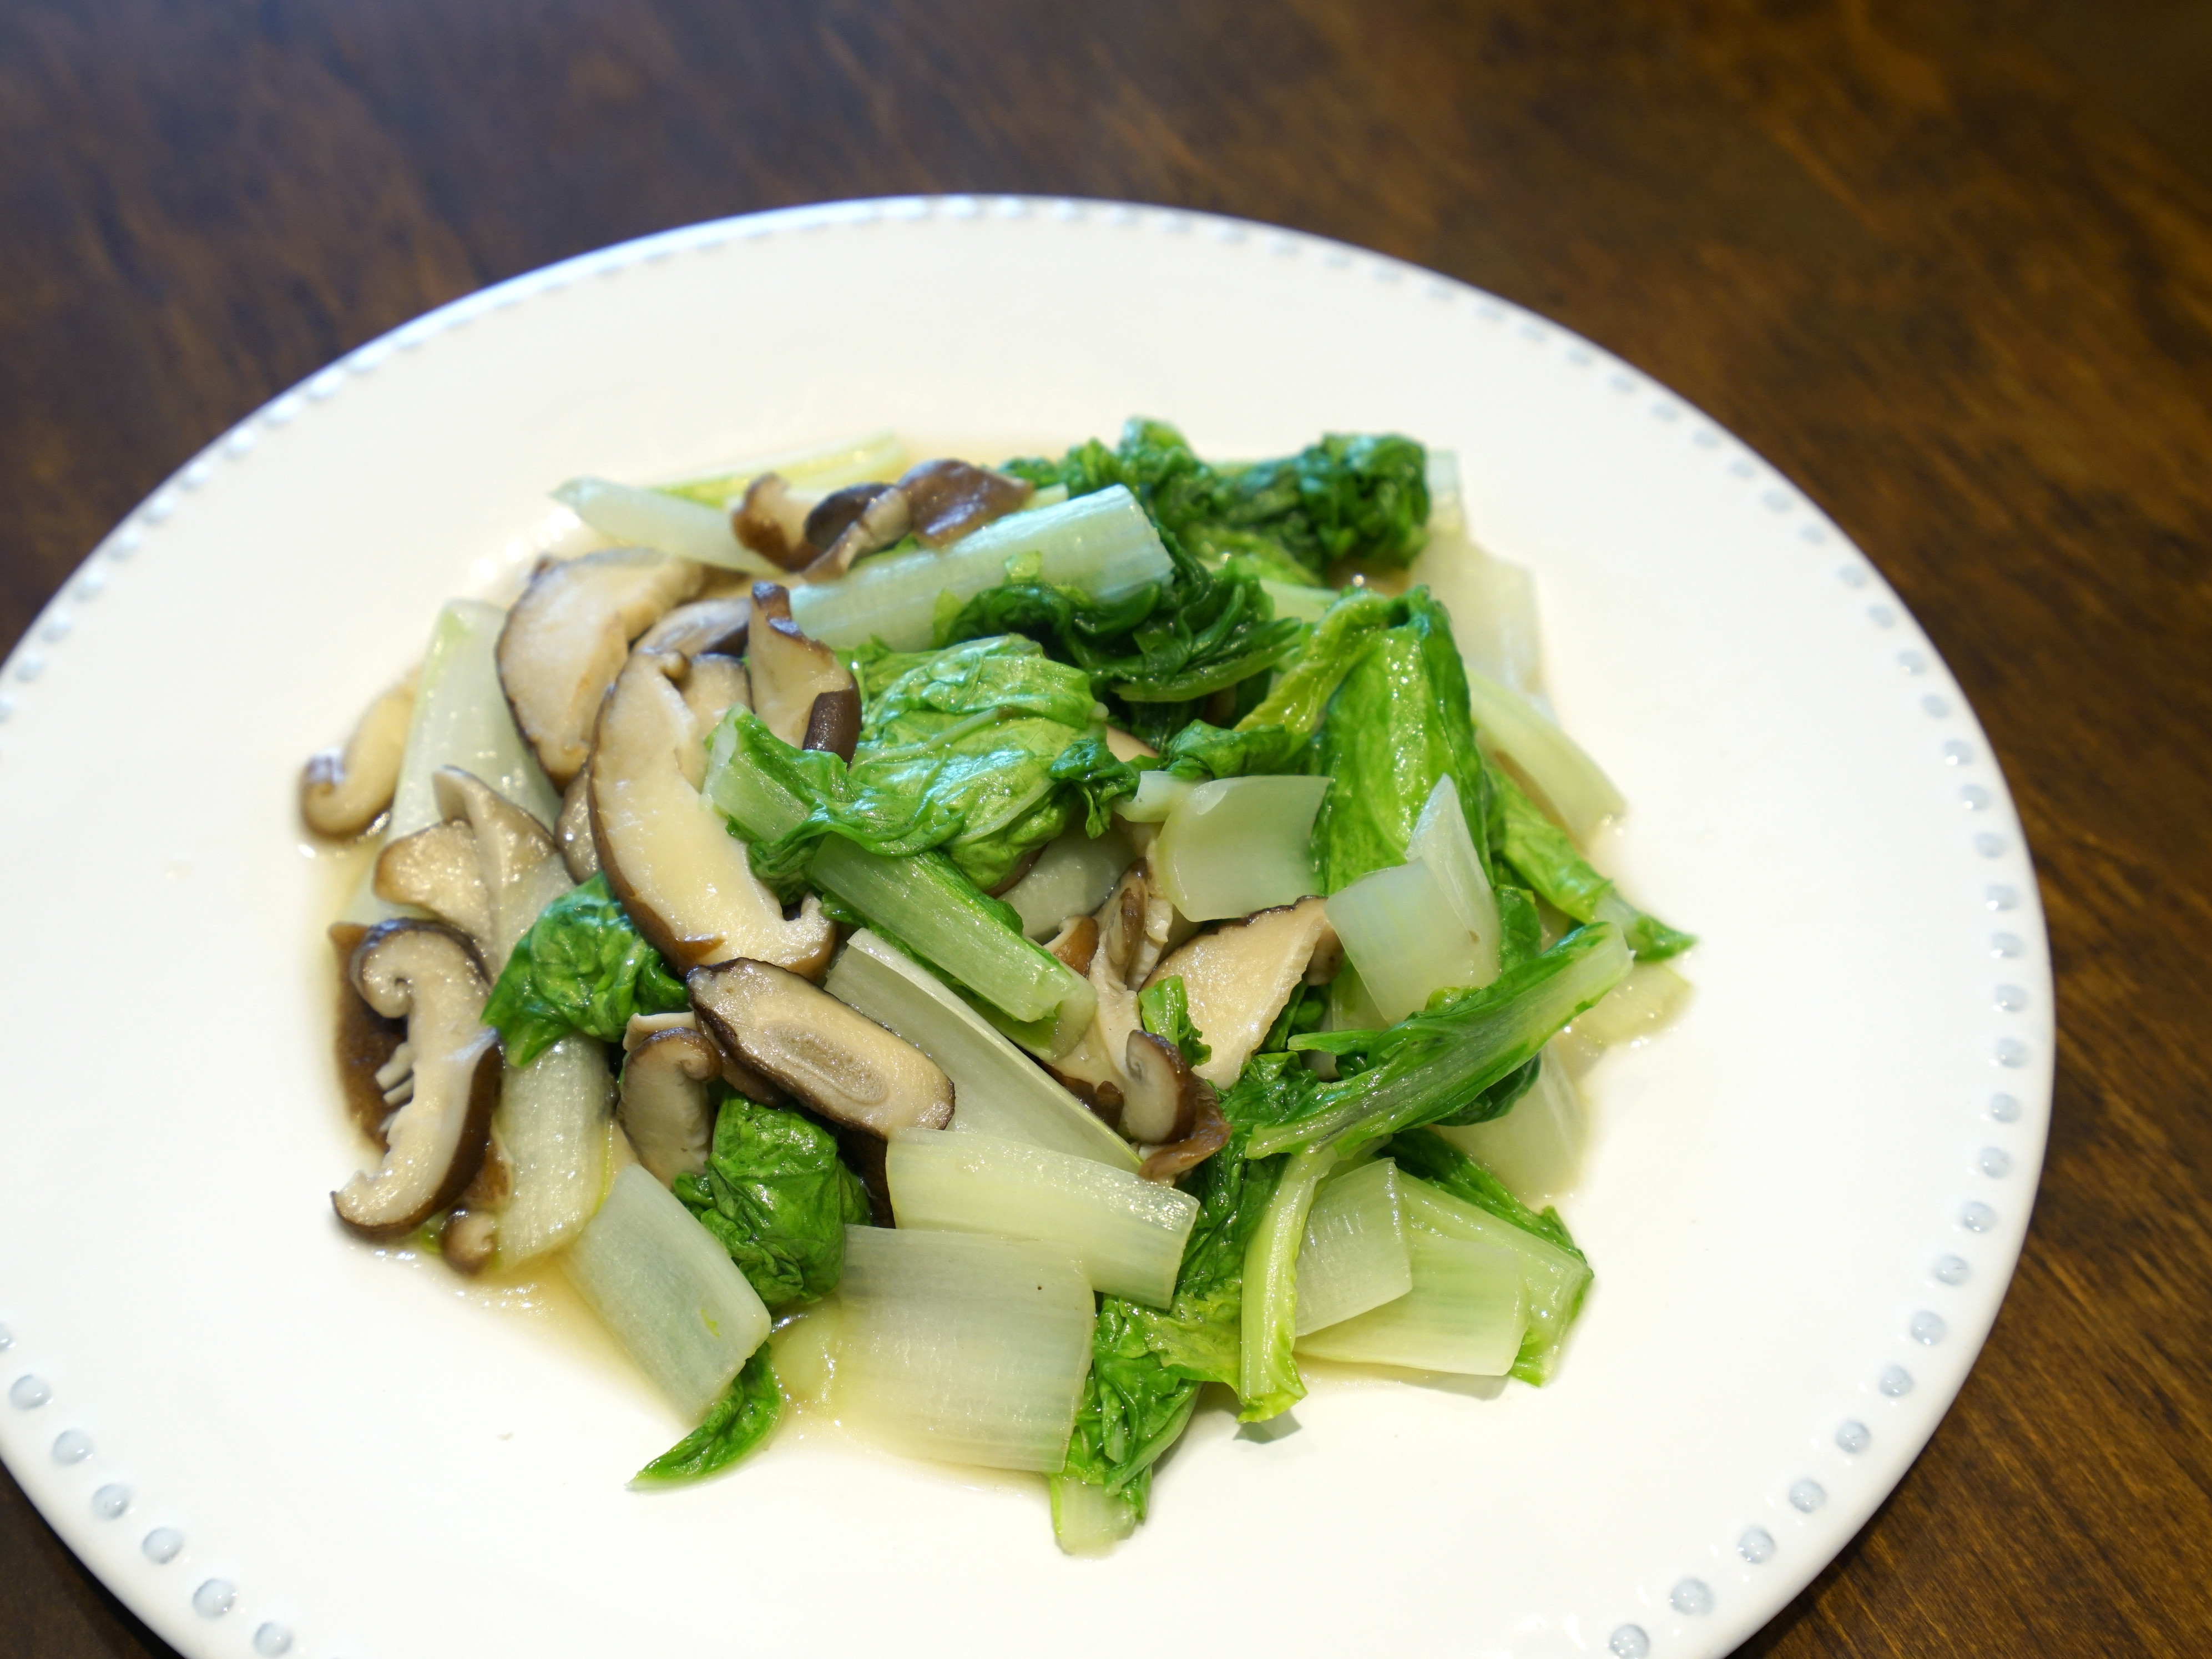 鮮香菇炒小白菜。簡易便當菜